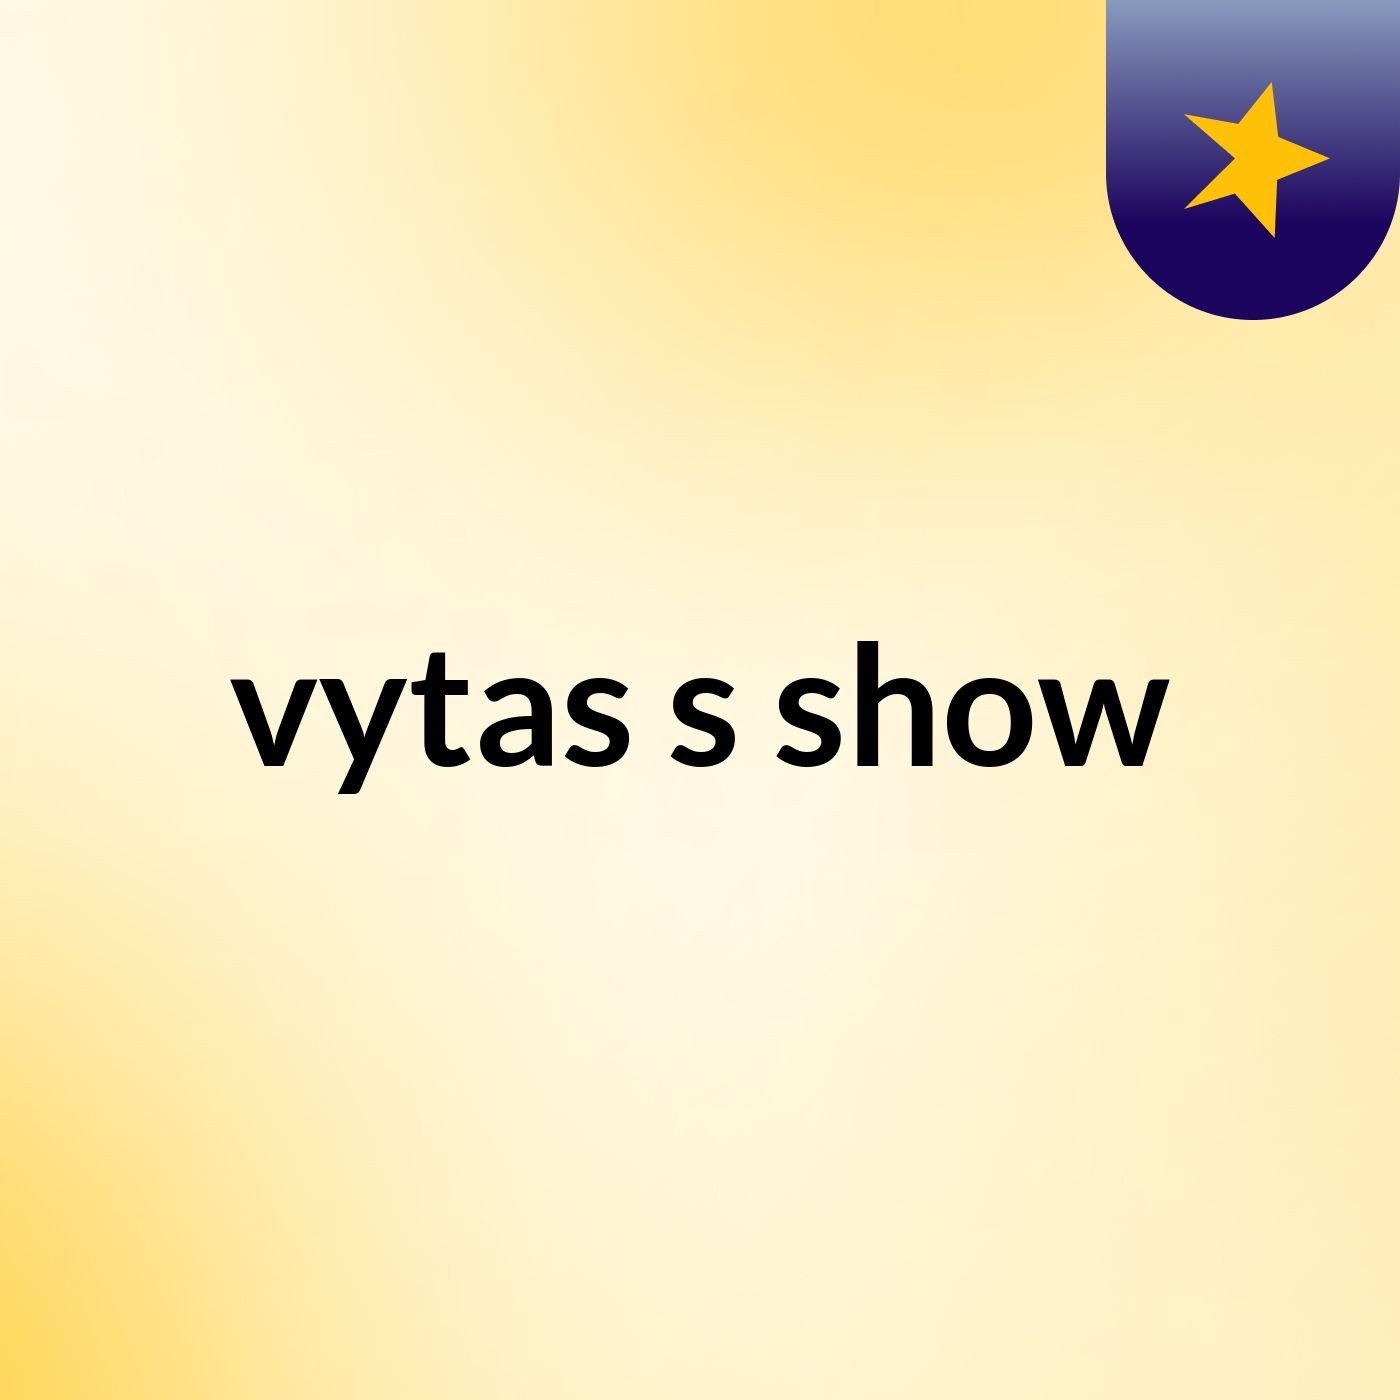 vytas's show